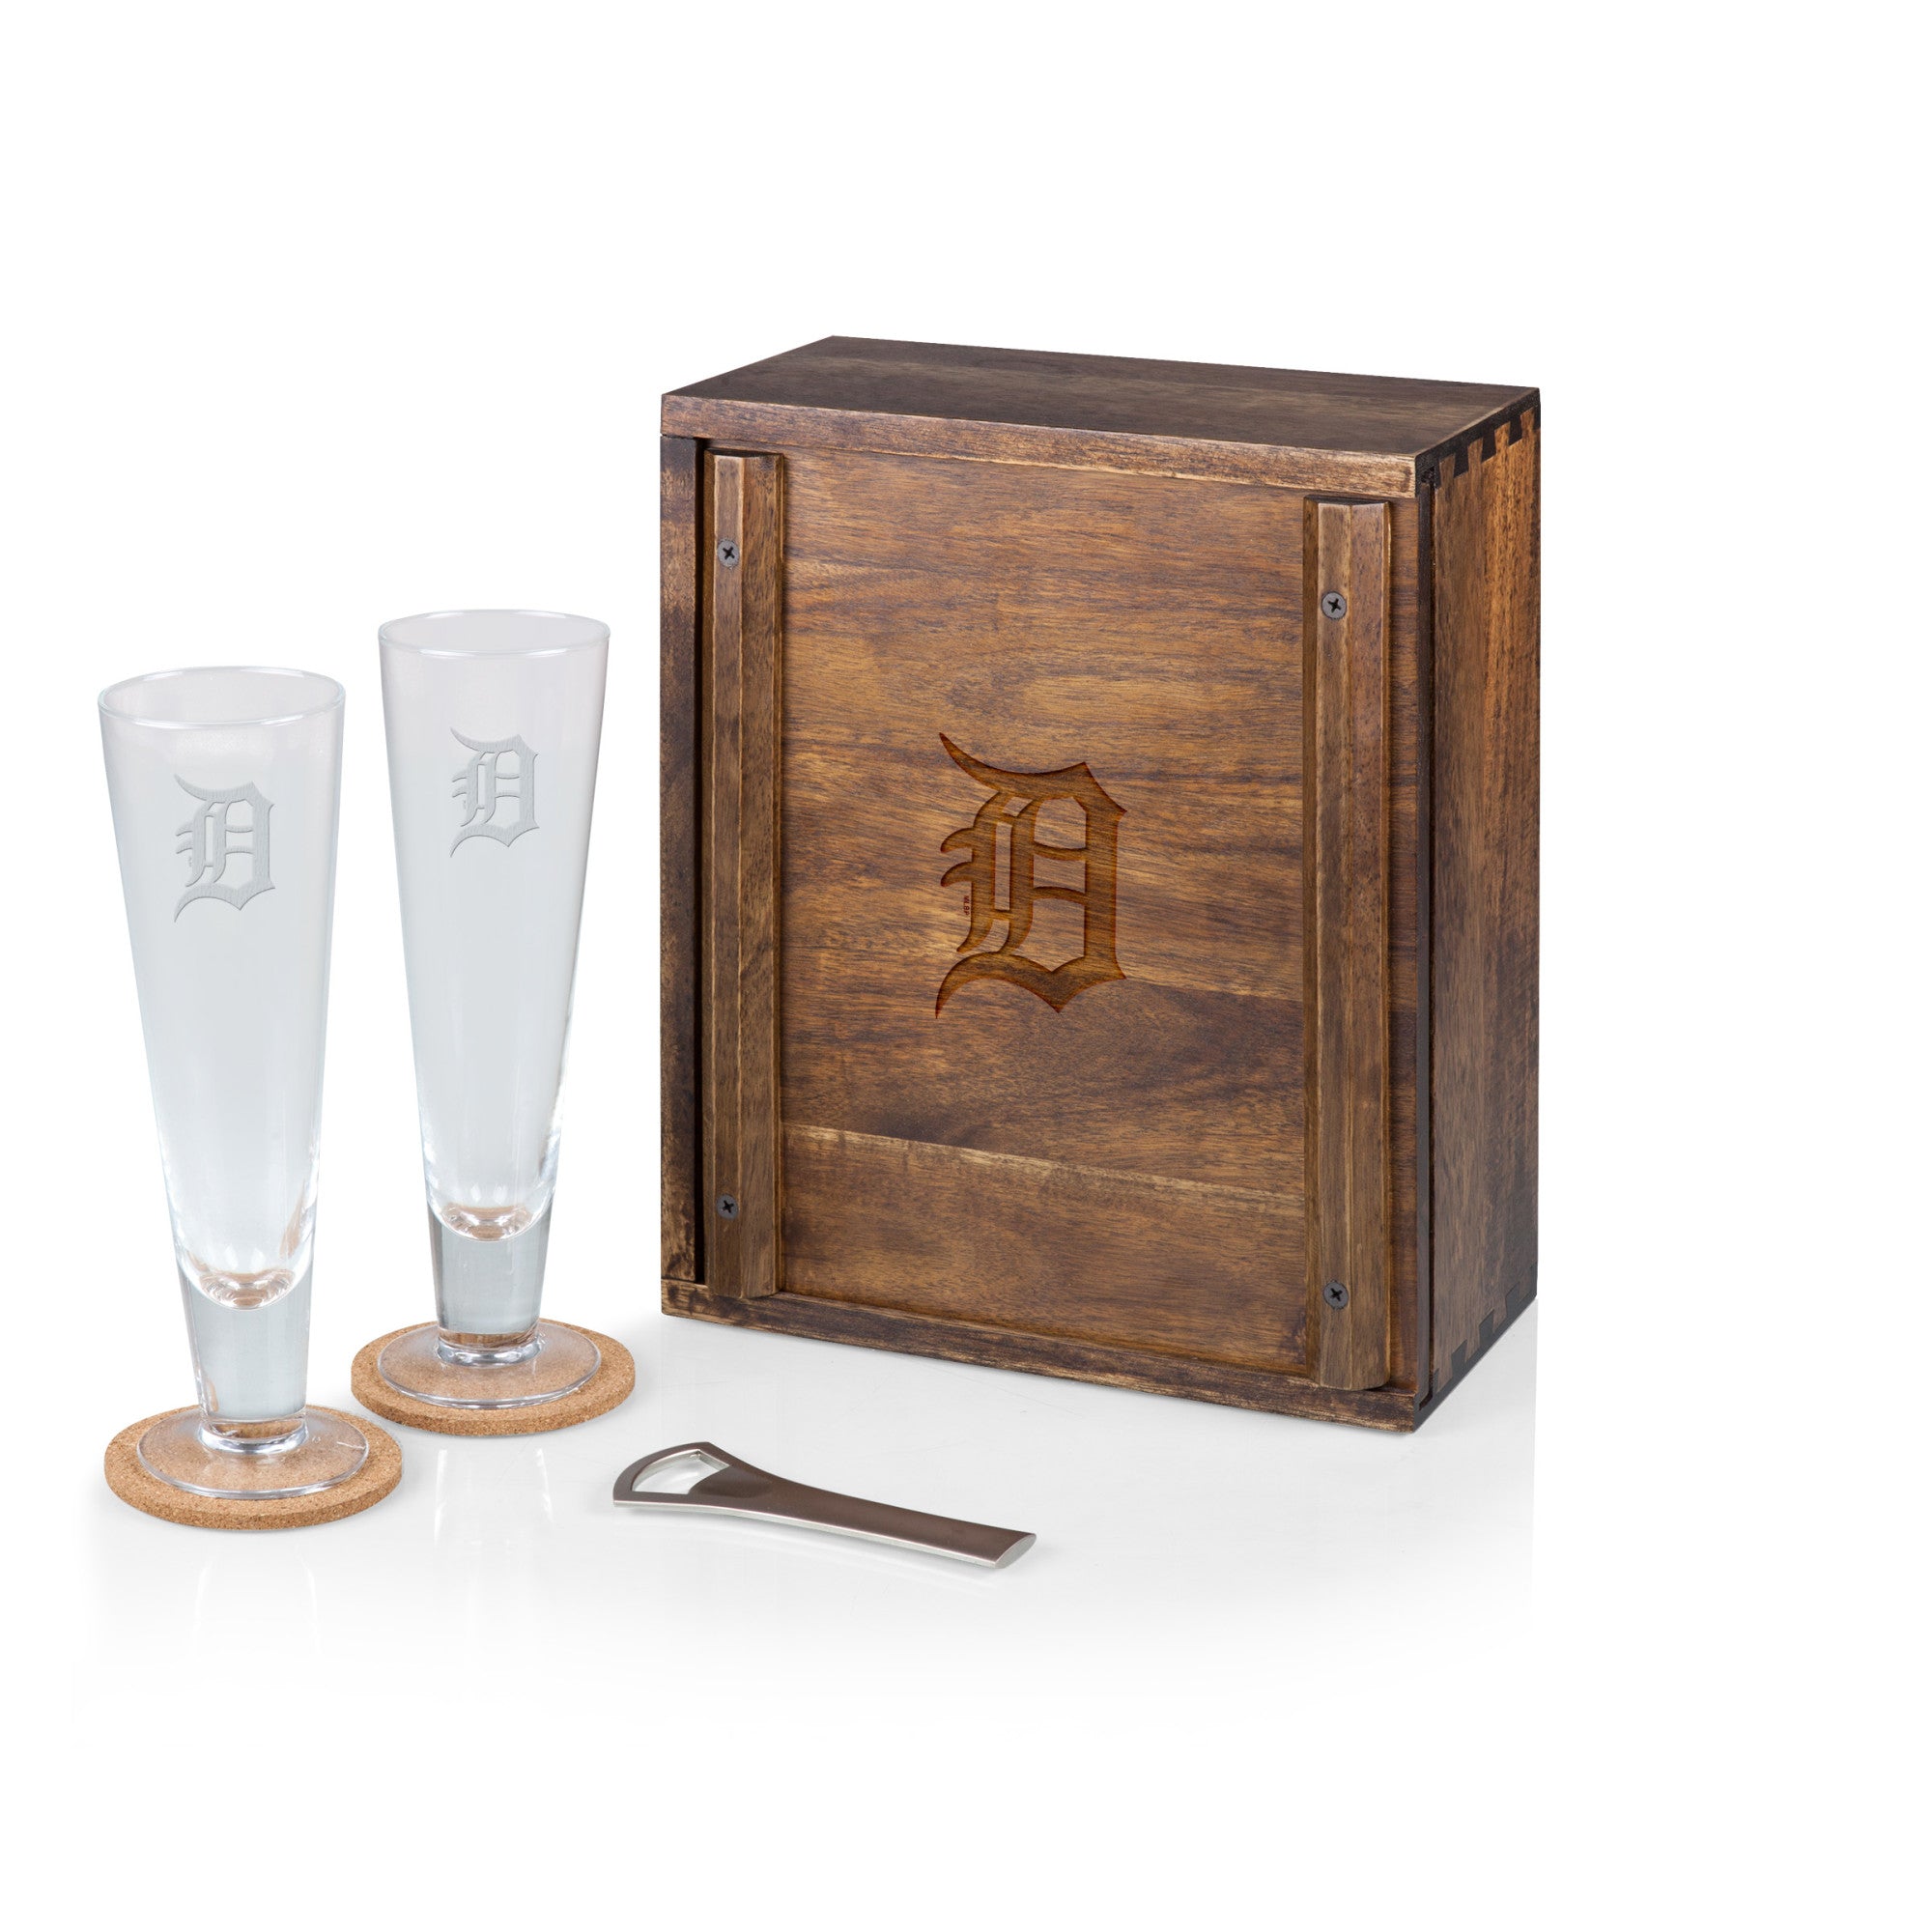 Detroit Tigers - Pilsner Beer Glass Gift Set